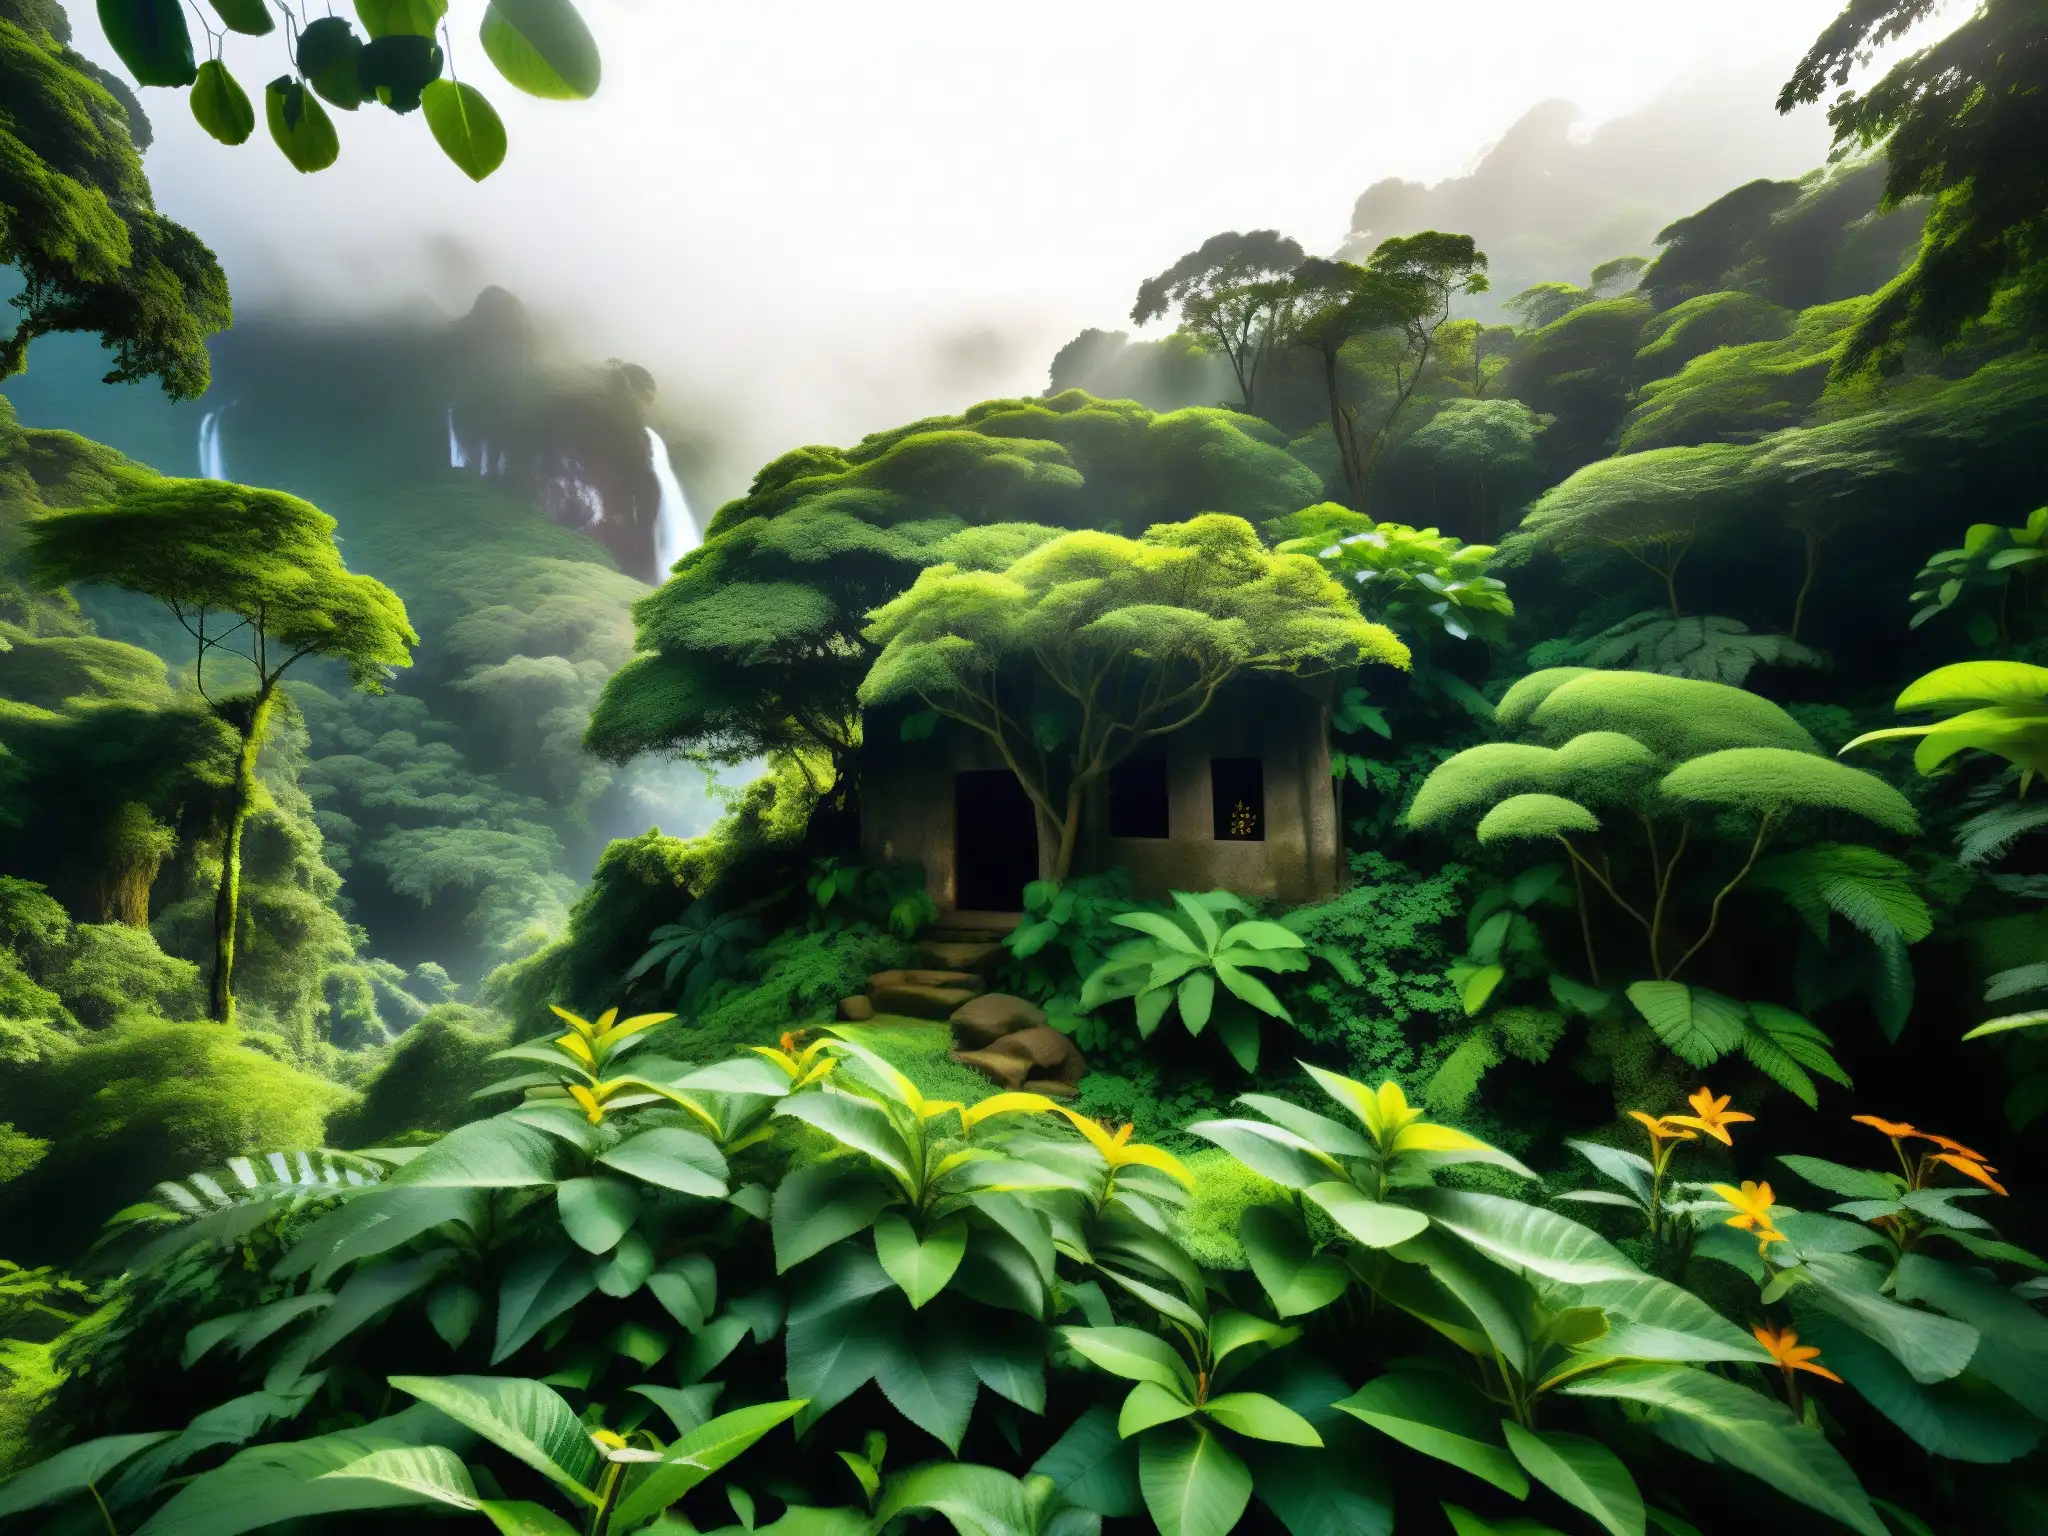 Imagen de un bosque misterioso y encantador en la selva suramericana, hogar de duendes según mitos y leyendas urbanas